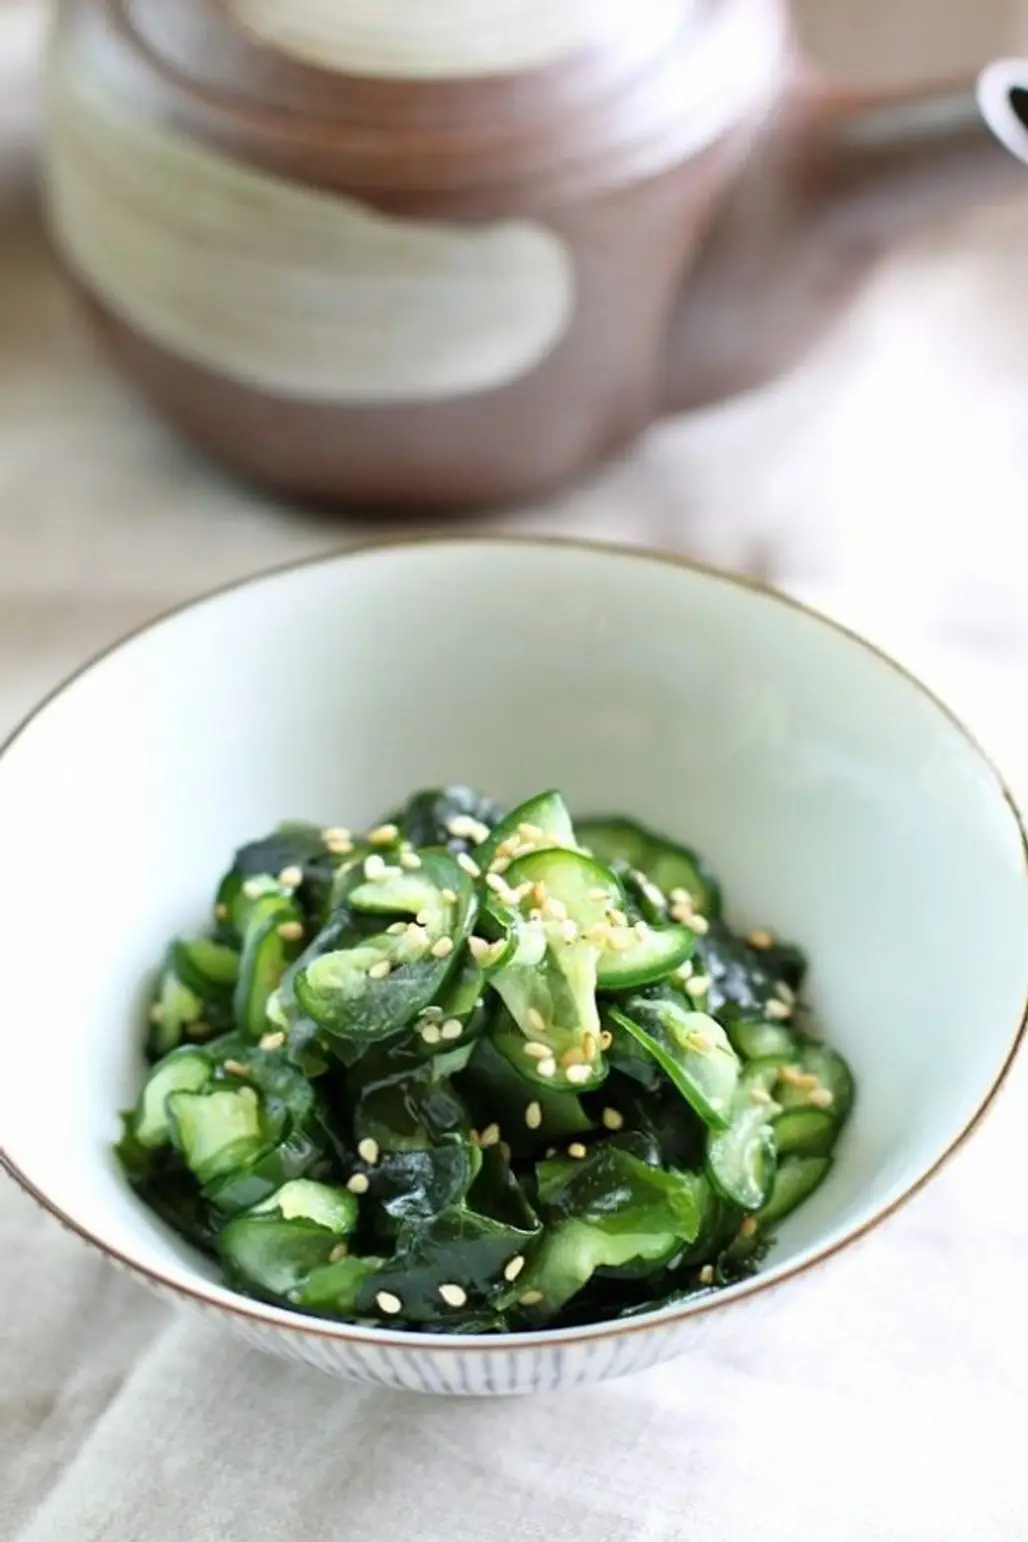 Sunomono (Cucumber and Seaweed)